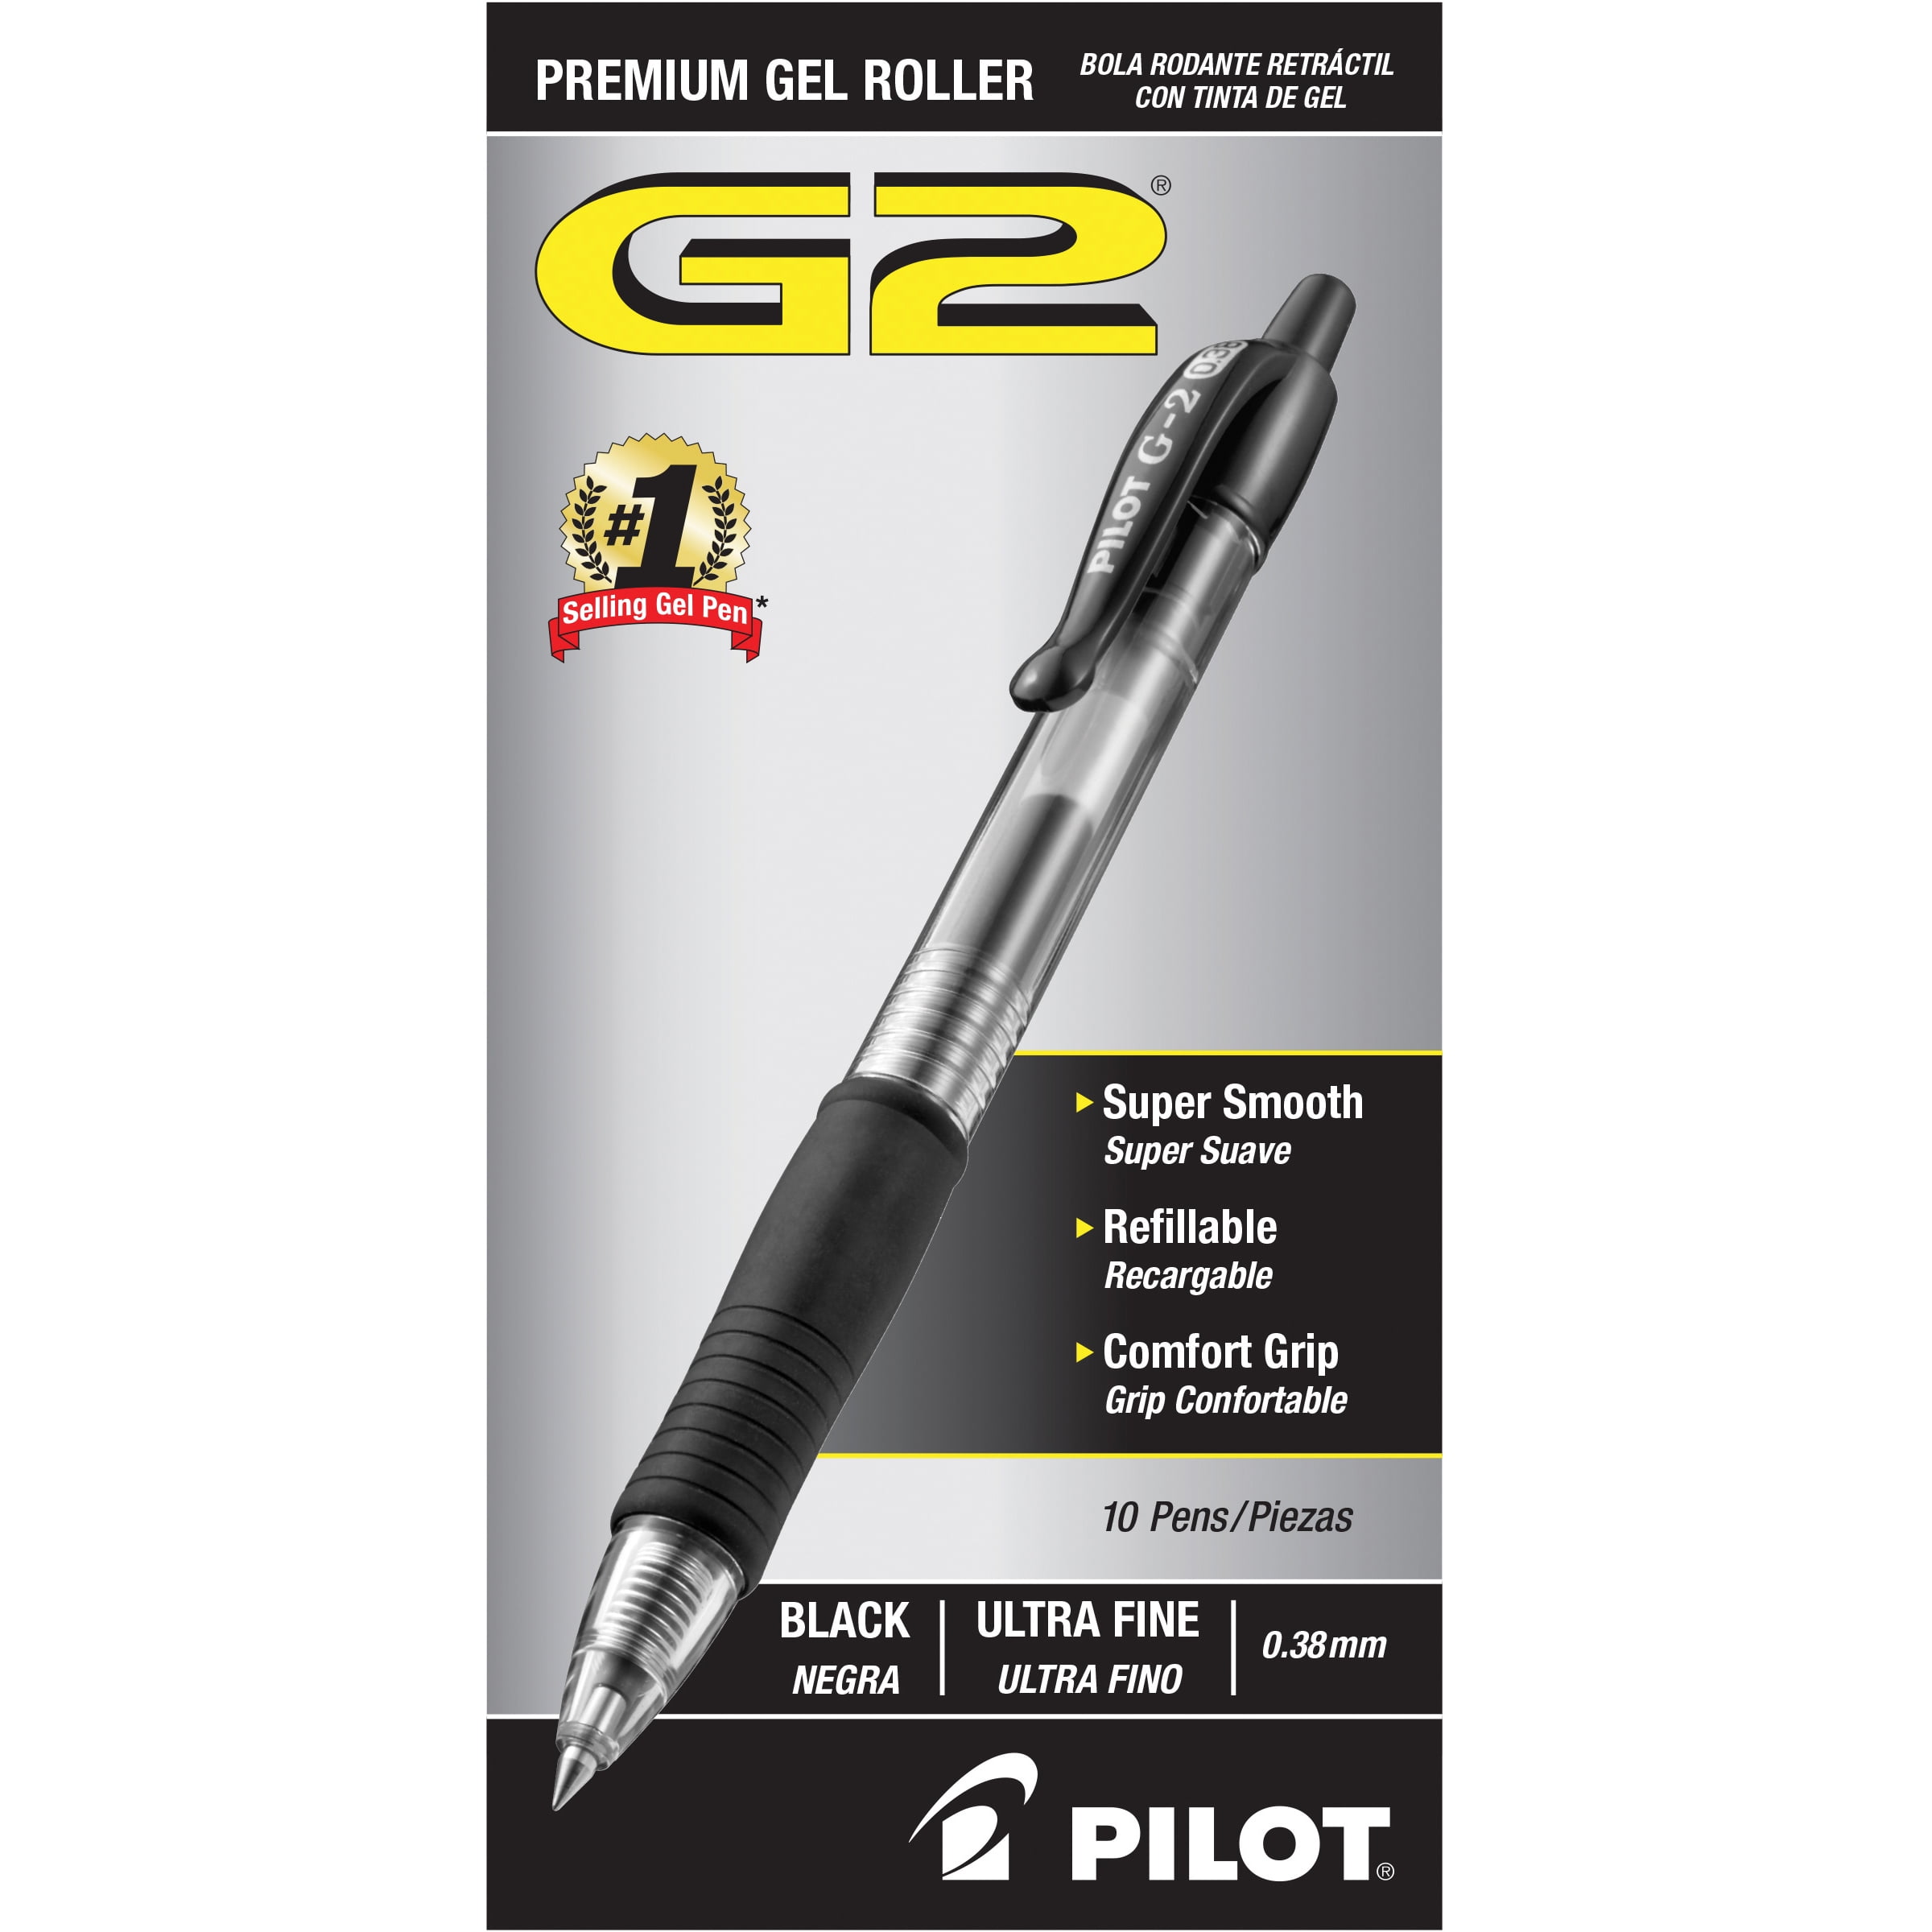 Pilot G2 0.38 Gel Ink Rolling Ball Pen Refills 3 Packs 0.38mm Ultra Fine Point